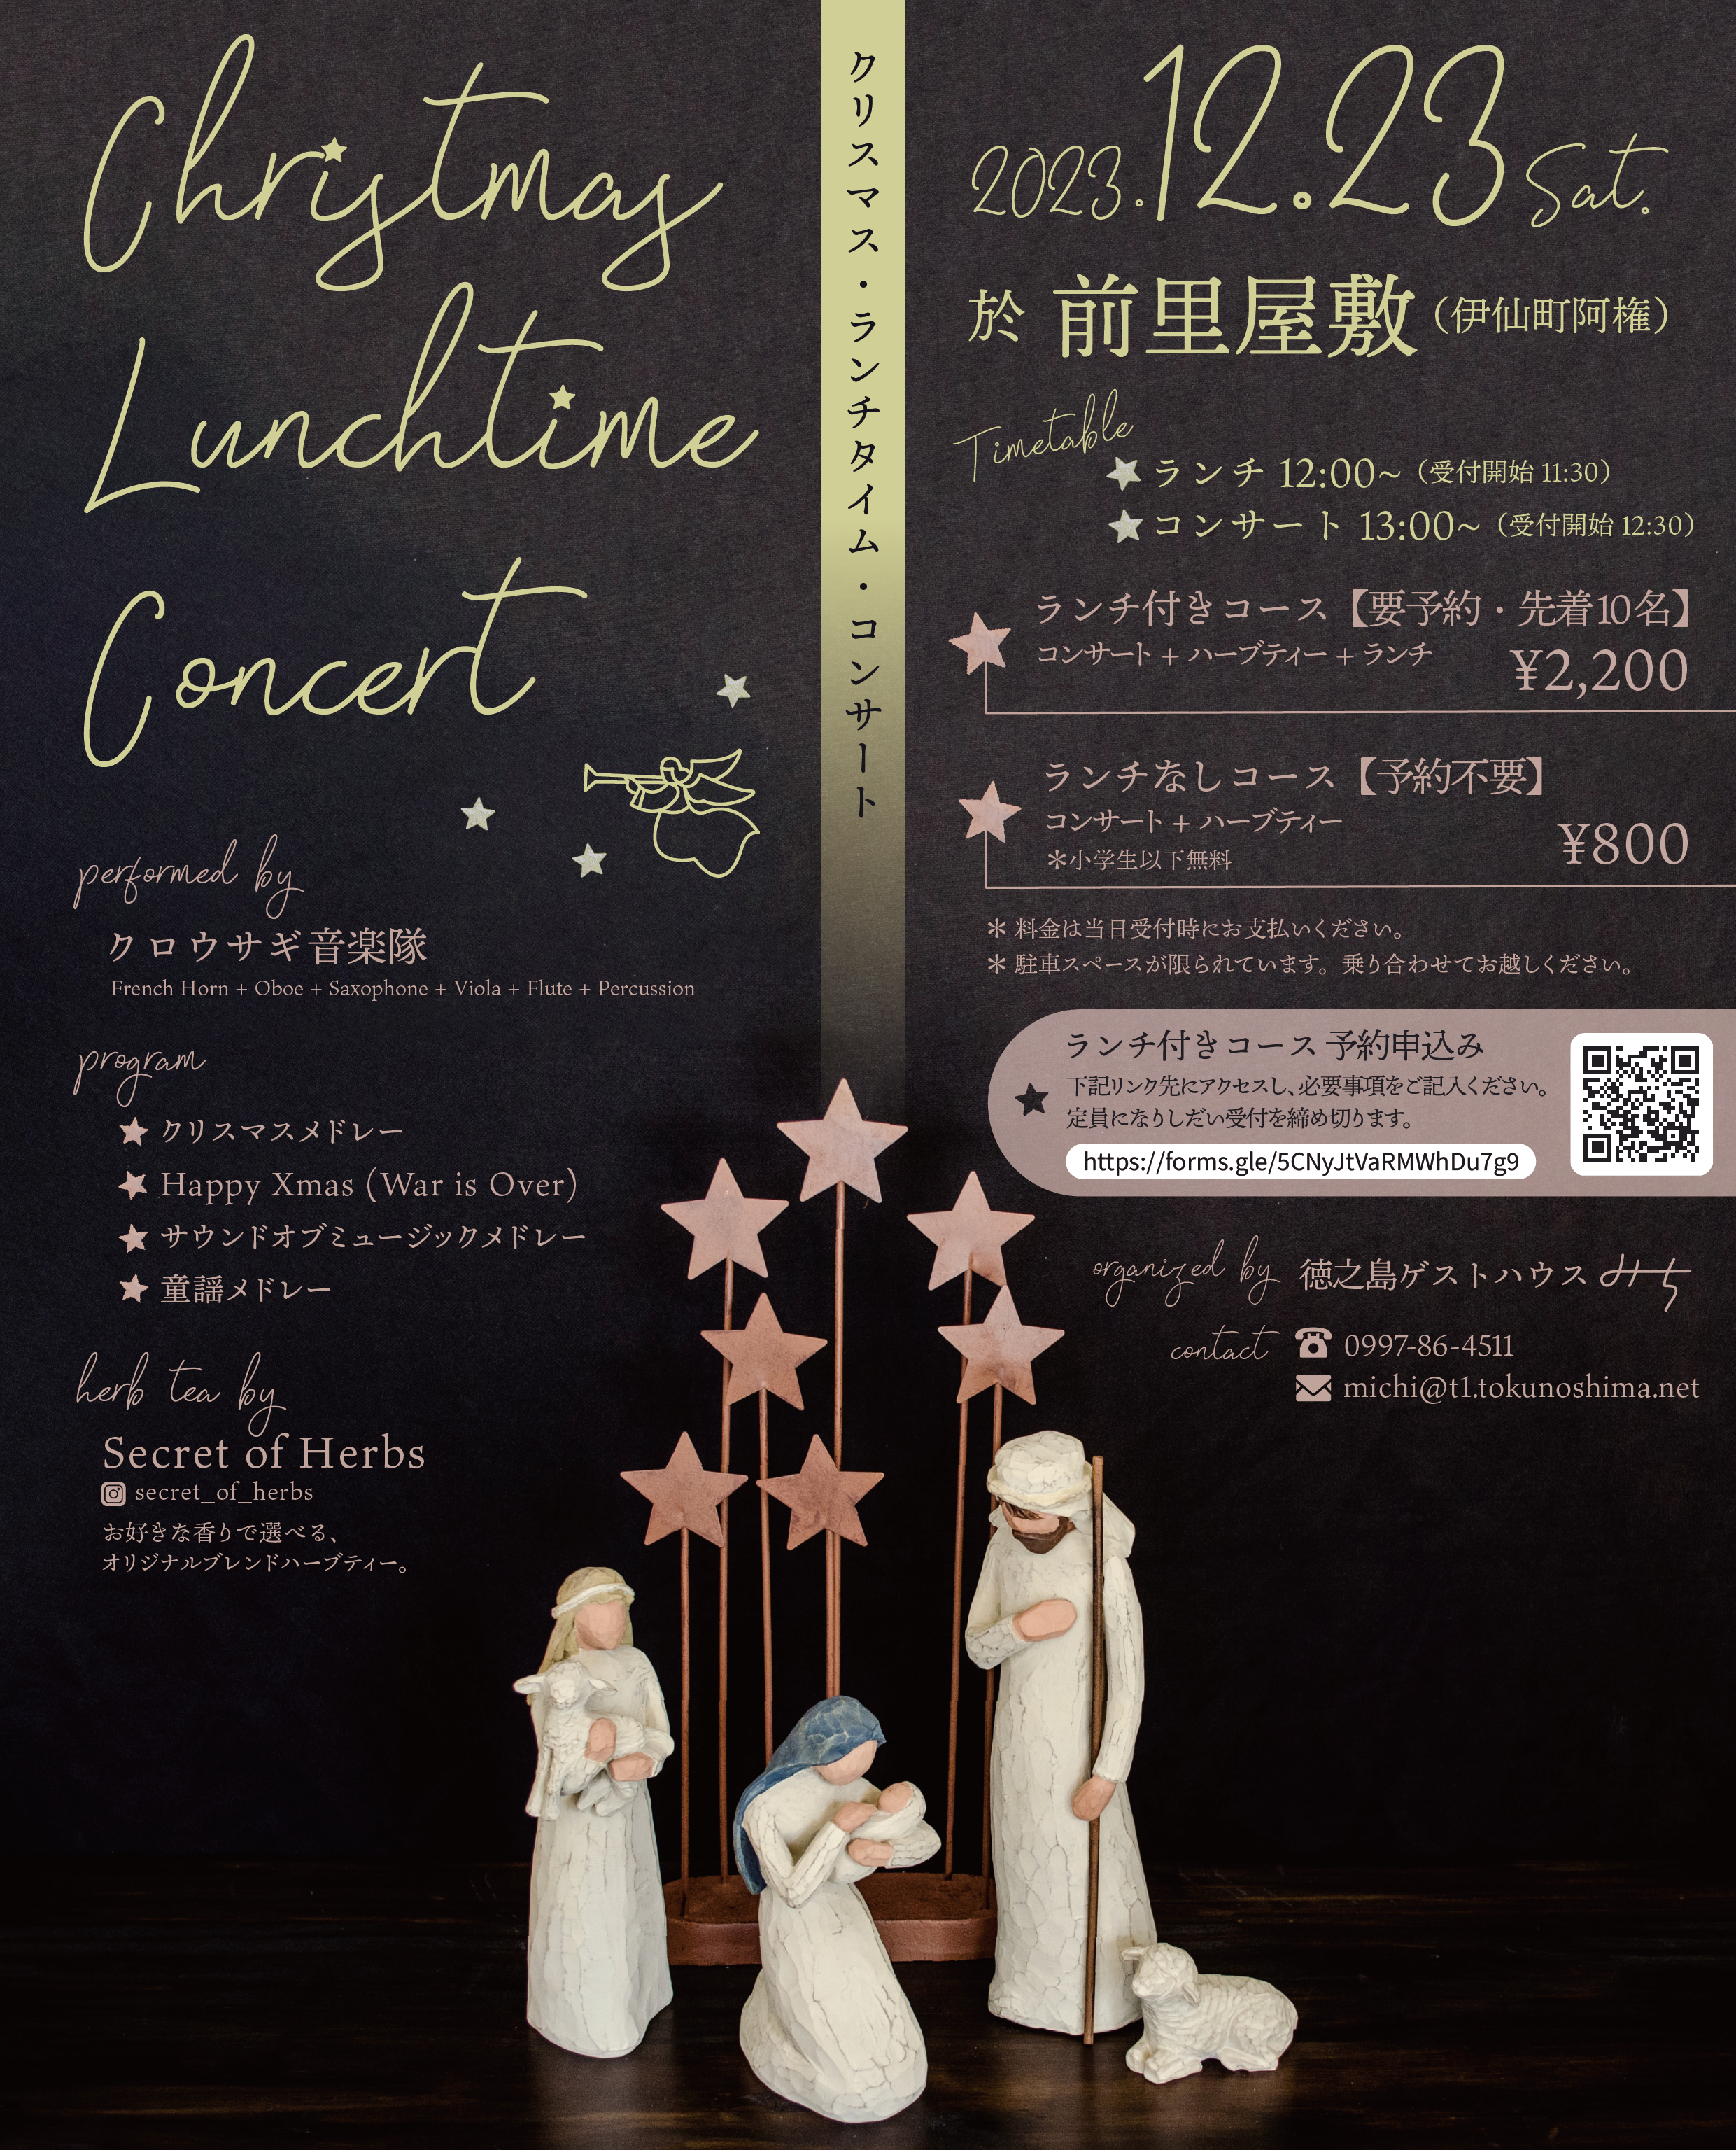 【2023/12/23】クリスマス・ランチタイム・コンサート